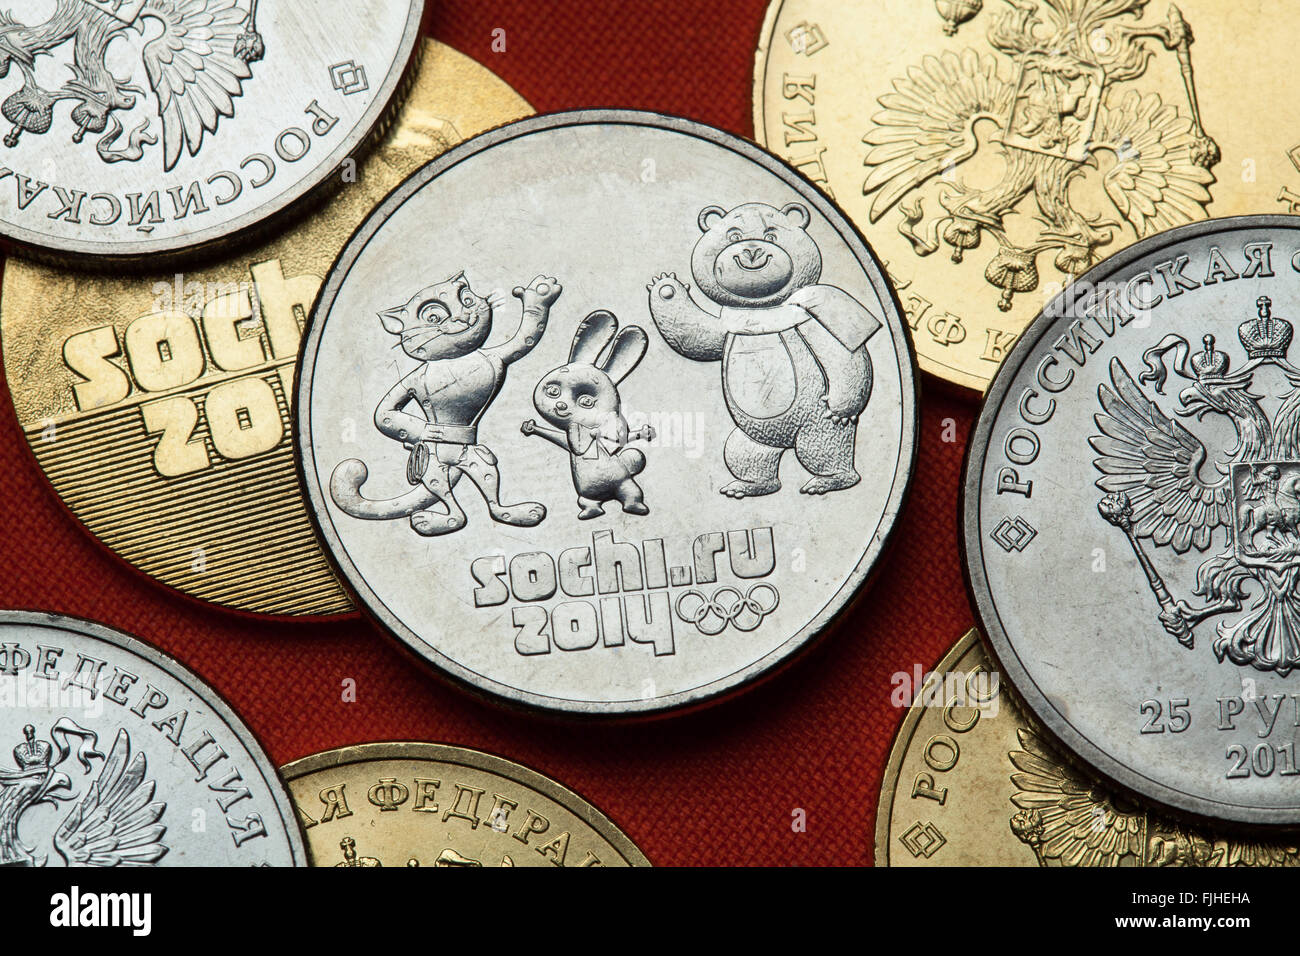 Münzen aus Russland. Olympische Maskottchen für die Sotschi 2014 Olympischen Winterspiele in Russland 25 Rubel-Gedenkmünze dargestellt. Stockfoto